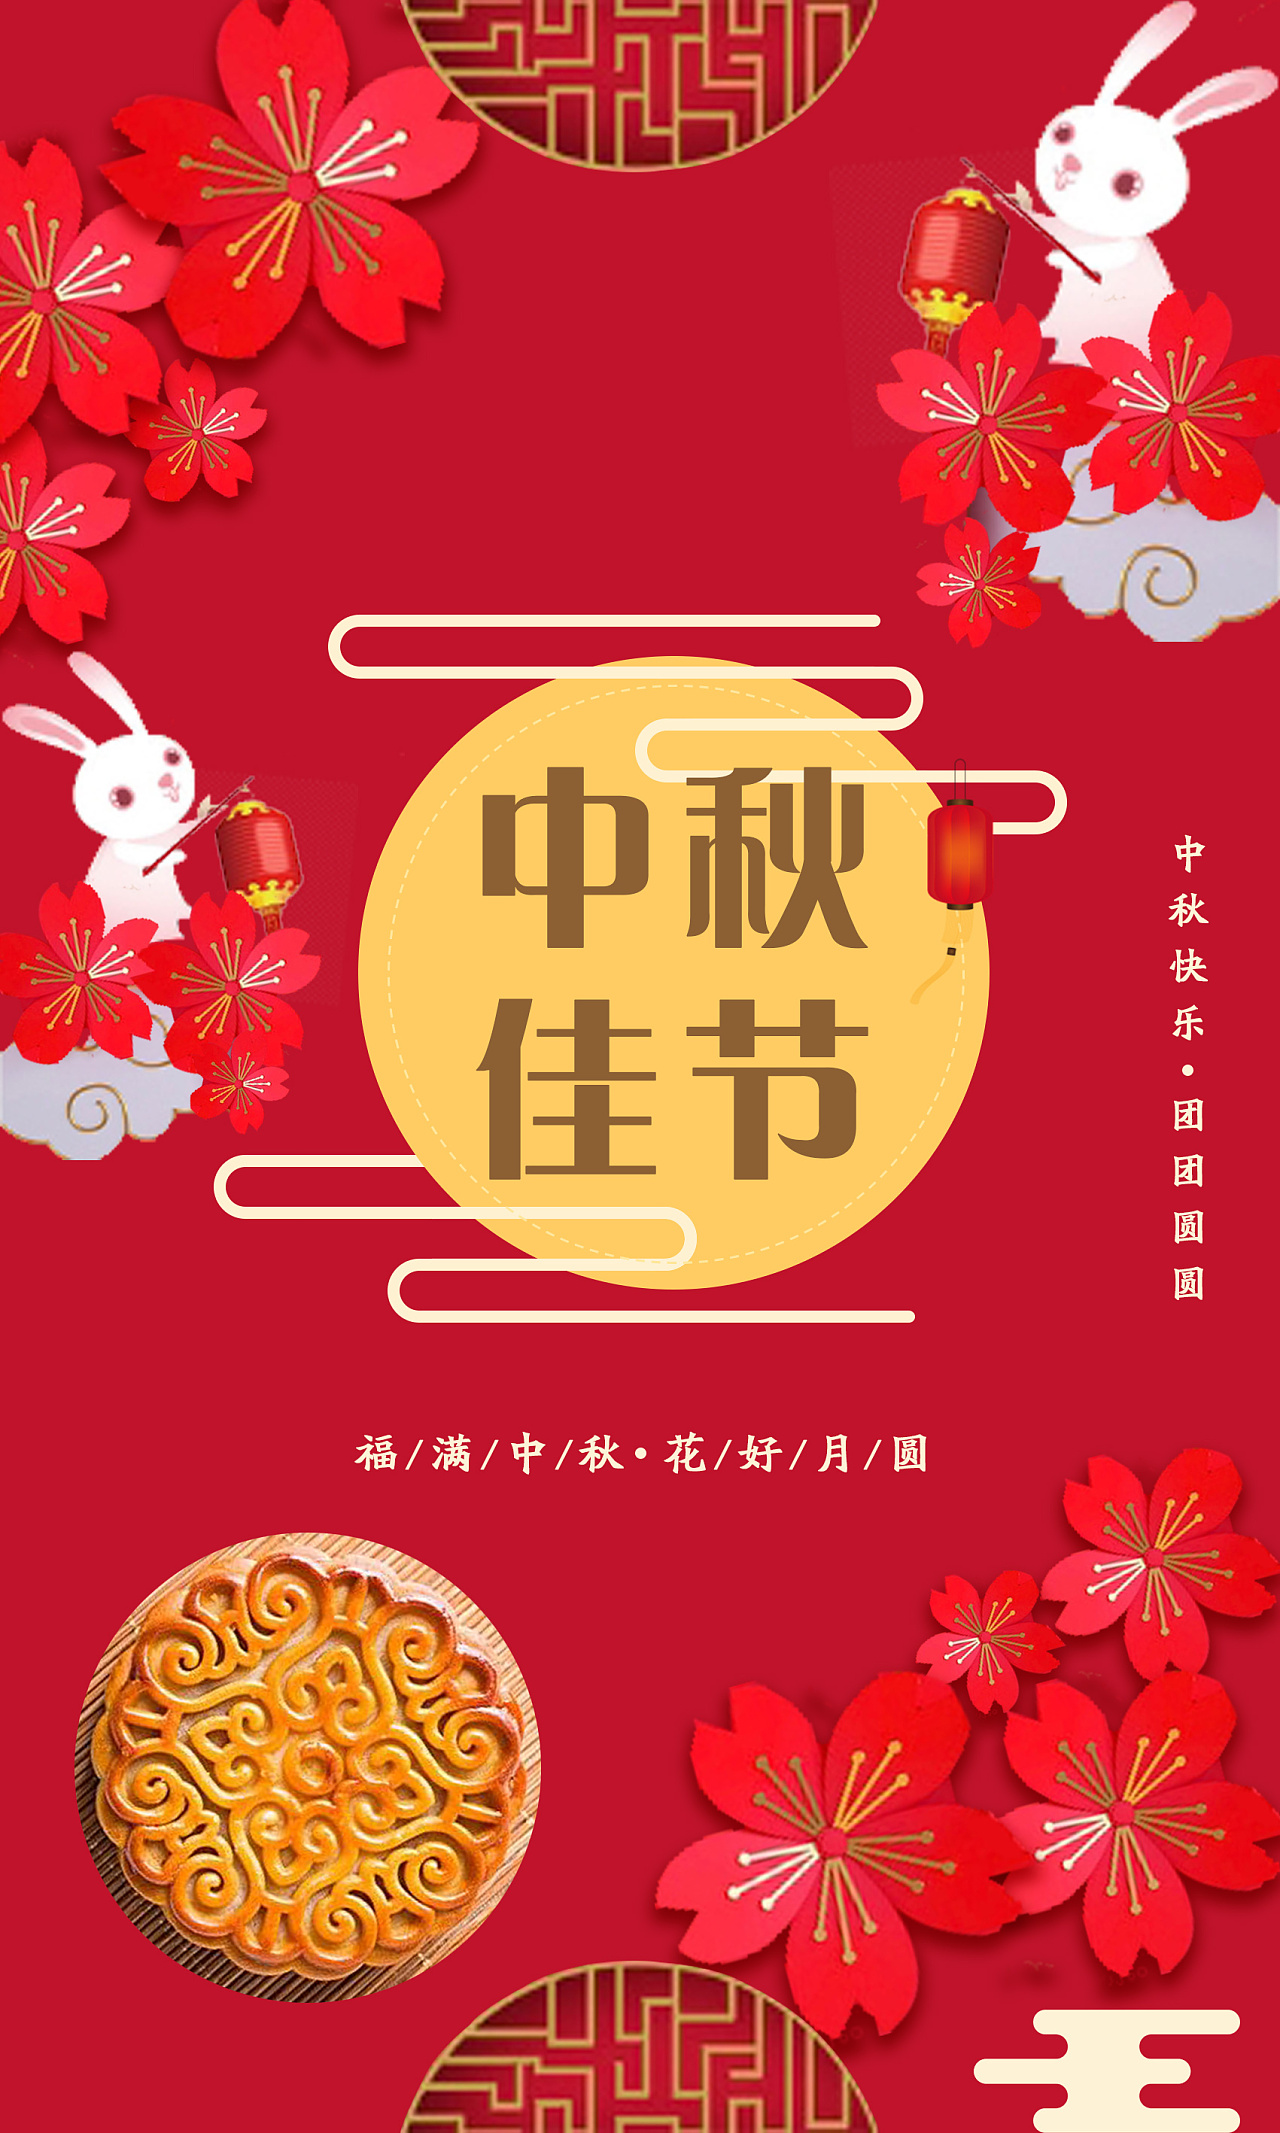 中秋节海报,红色底代表喜庆